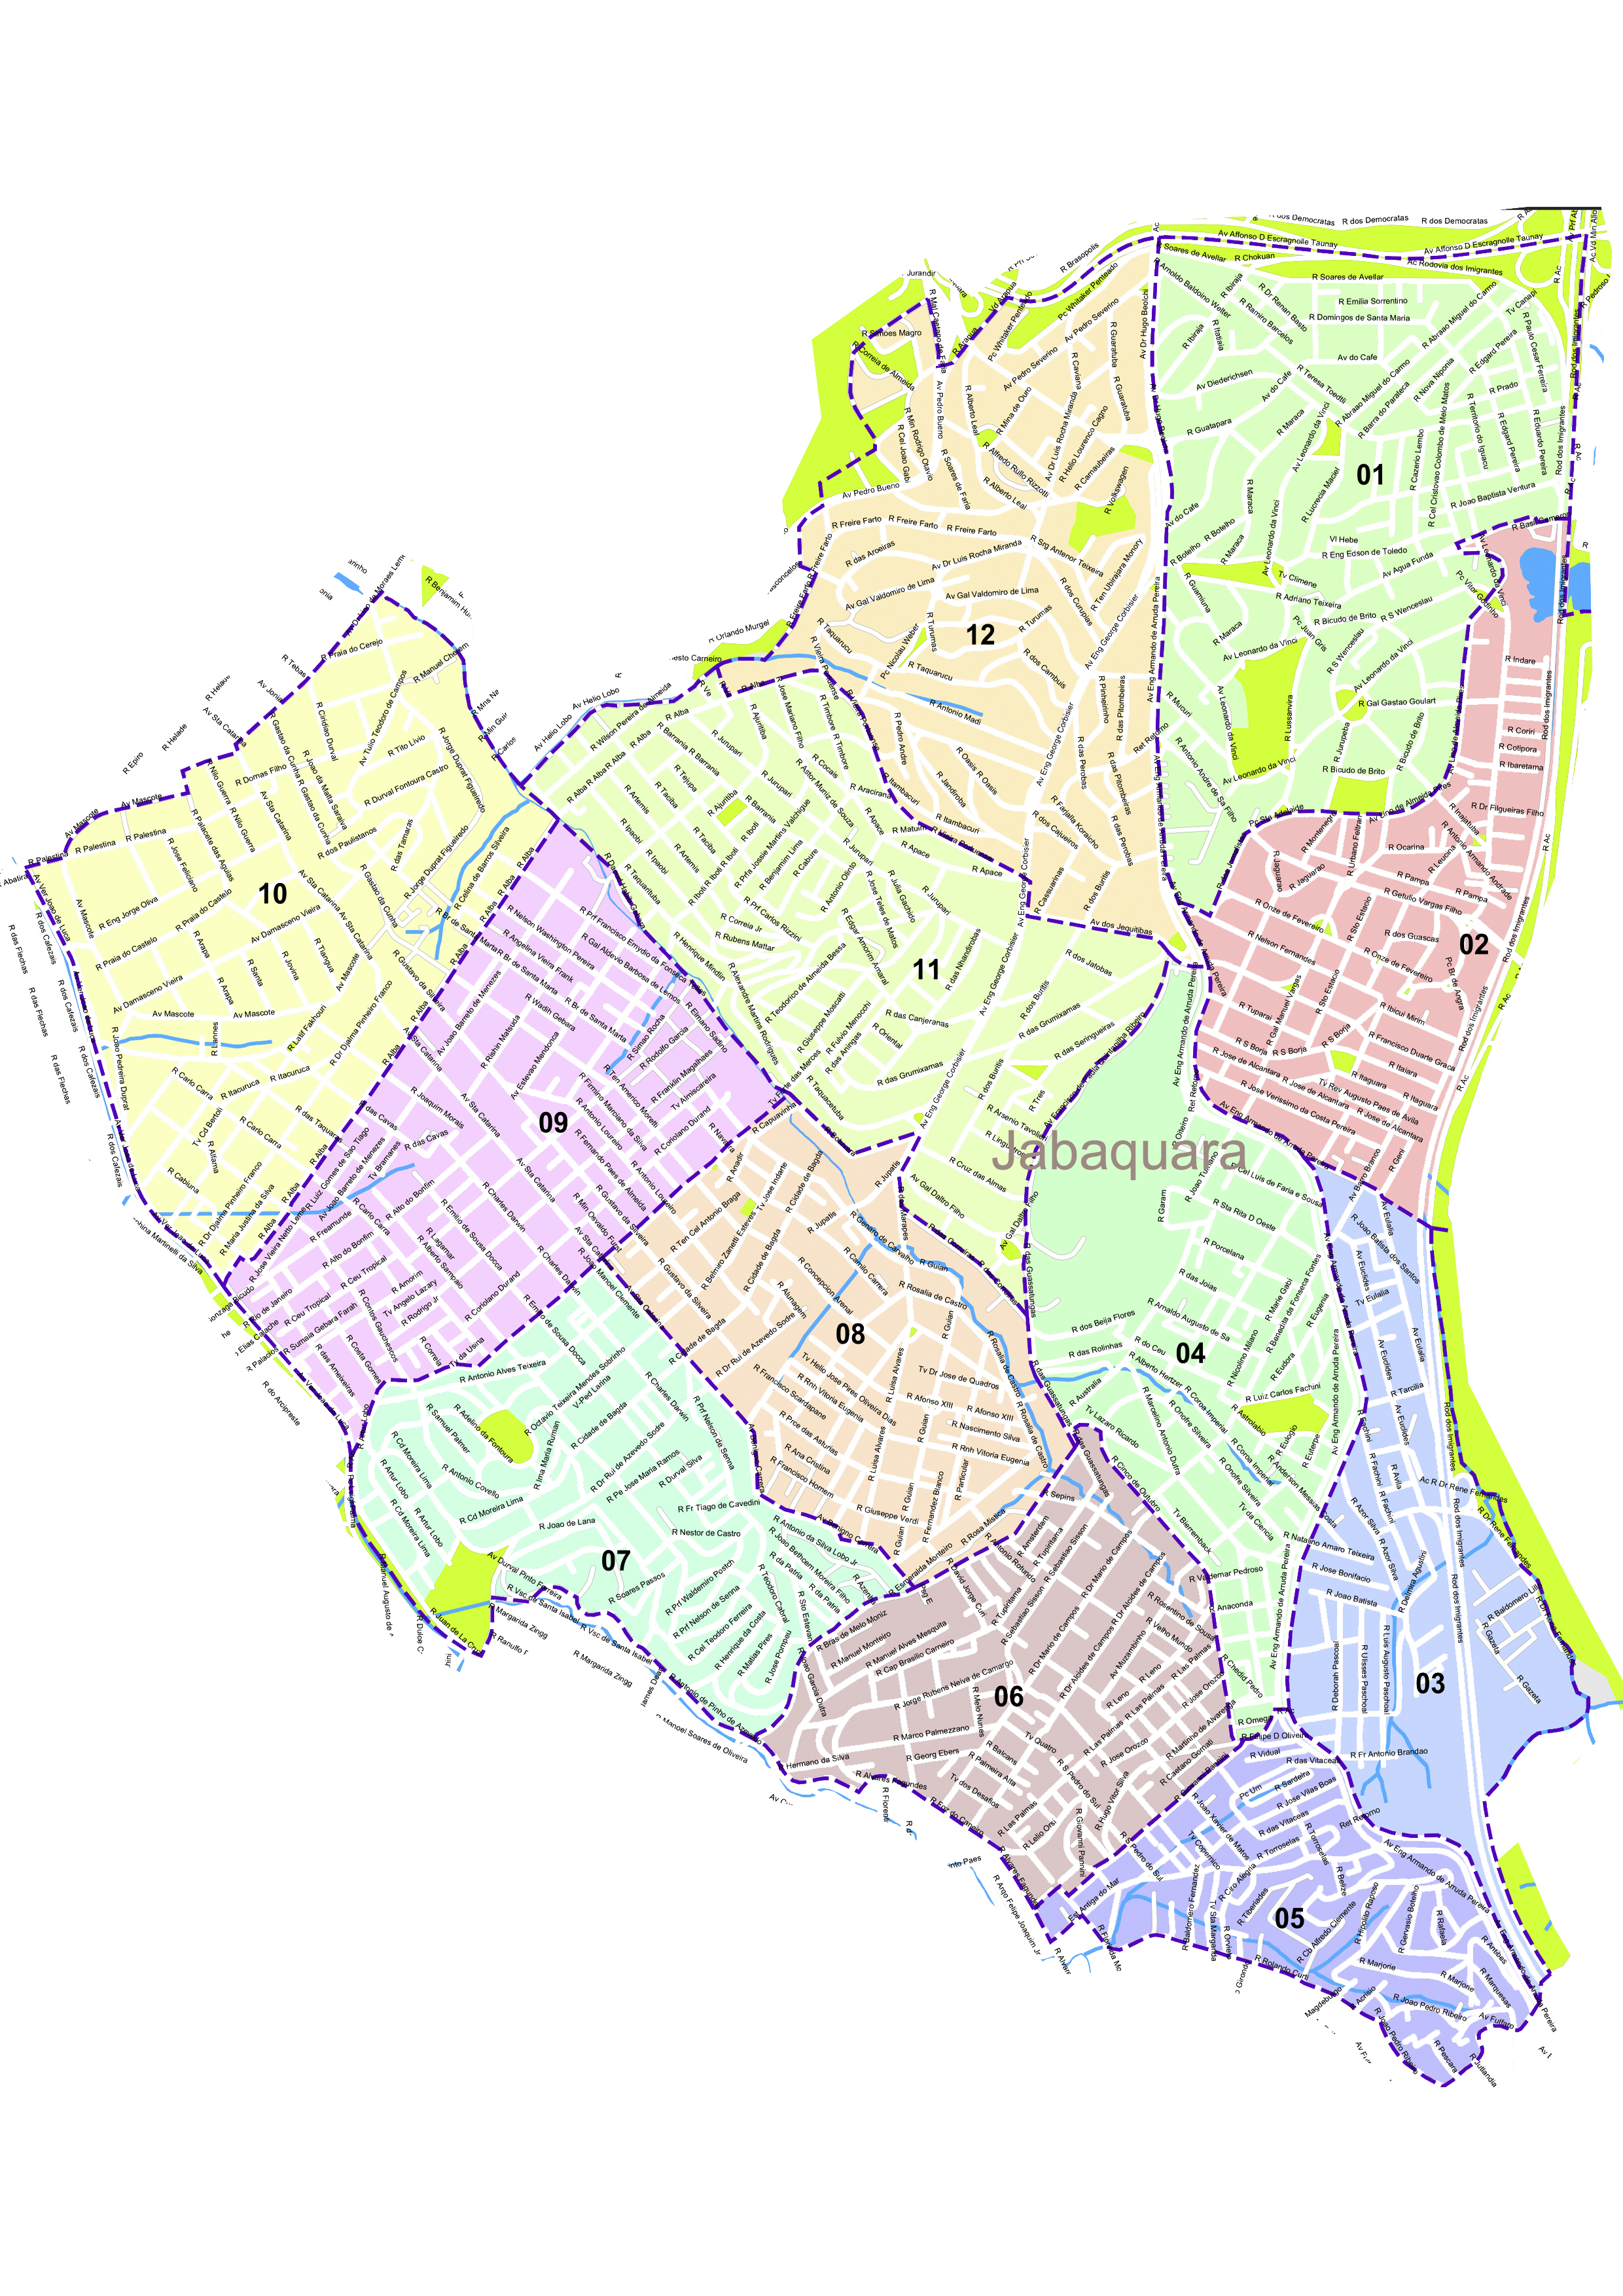 Imagem de um mapa da região do Jabaquara dividido em doze setores 